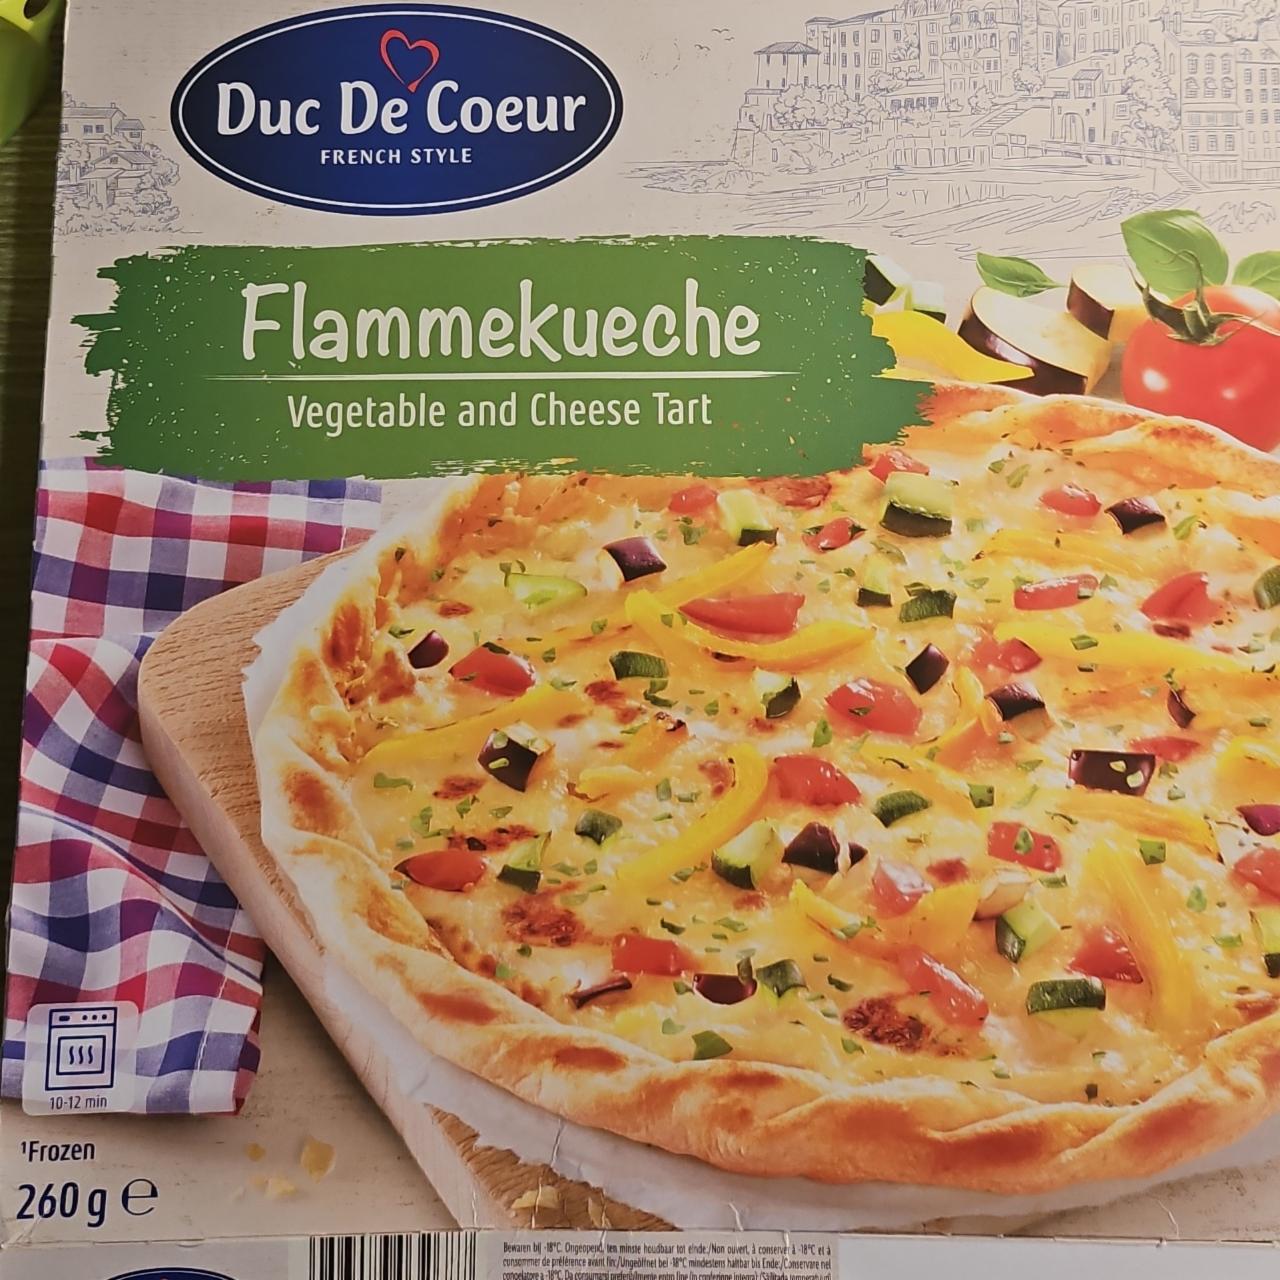 Фото - Тарт с овощами и сыром Flammekueche Duc De Coeur